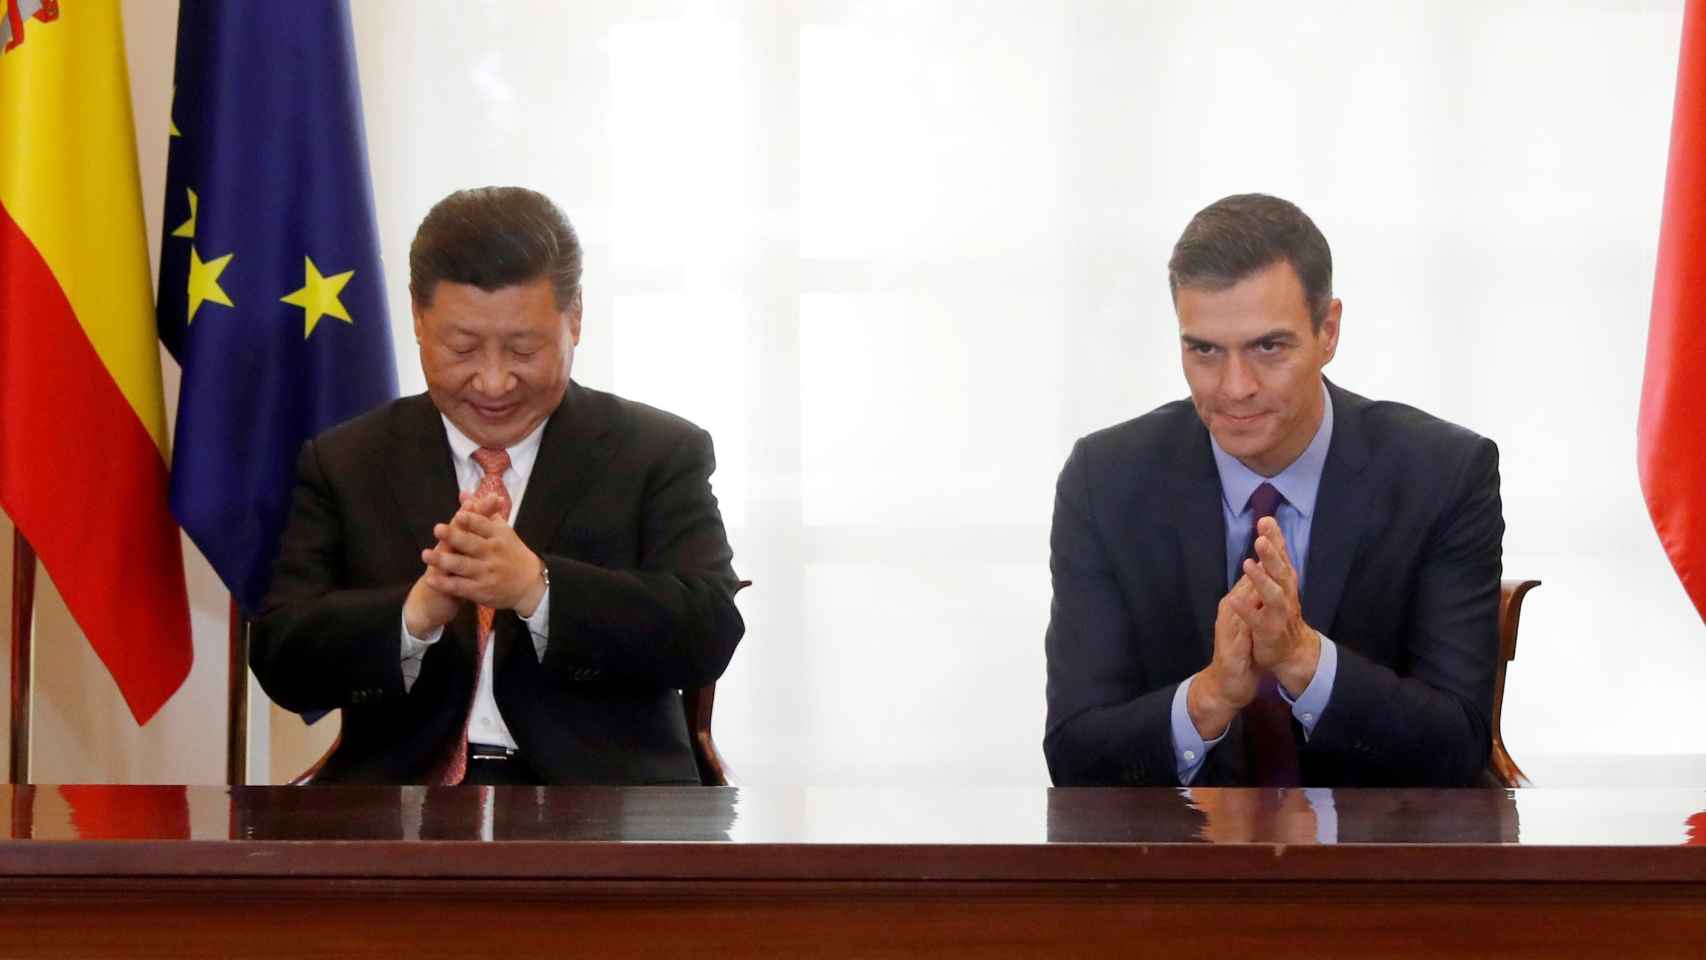 Xi Jinping, presidente de China, y Pedro Sánchez, presidente del Gobierno, minutos antes de firmar acuerdos comerciales en Moncloa, en 2018.